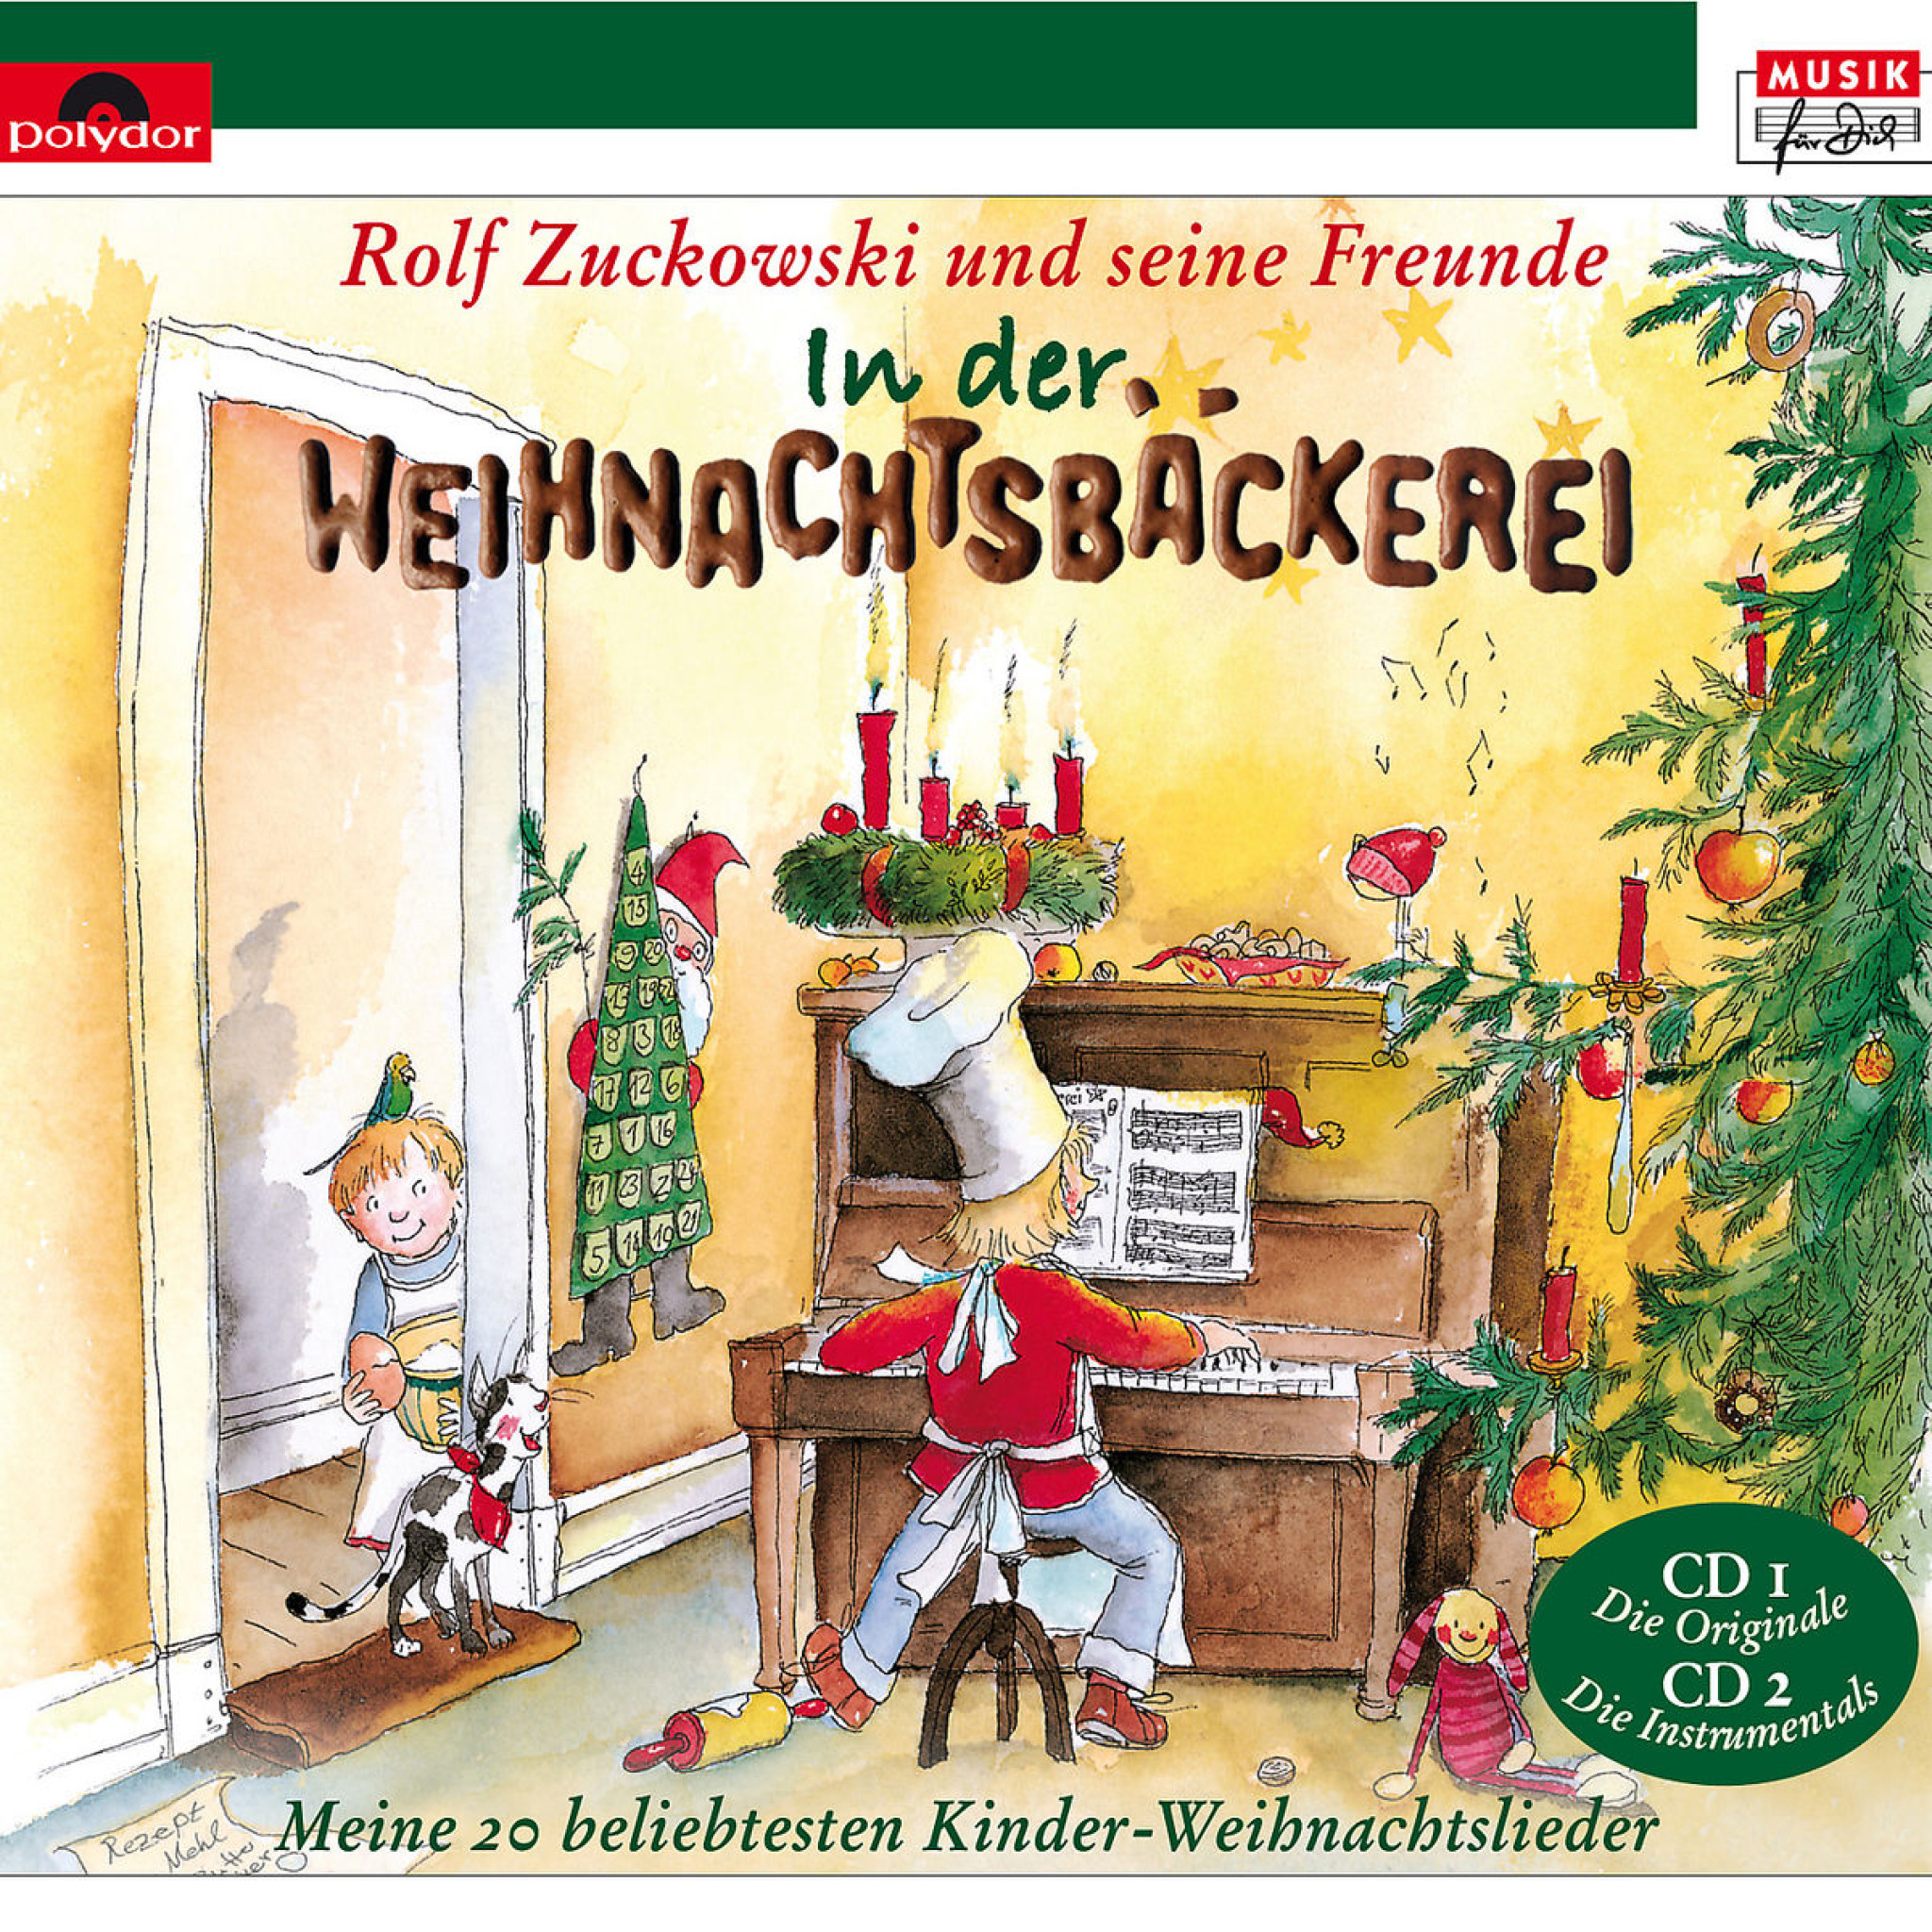 In der Weihnachtsbäckerei: Zuckowski, Rolf und seine Freunde